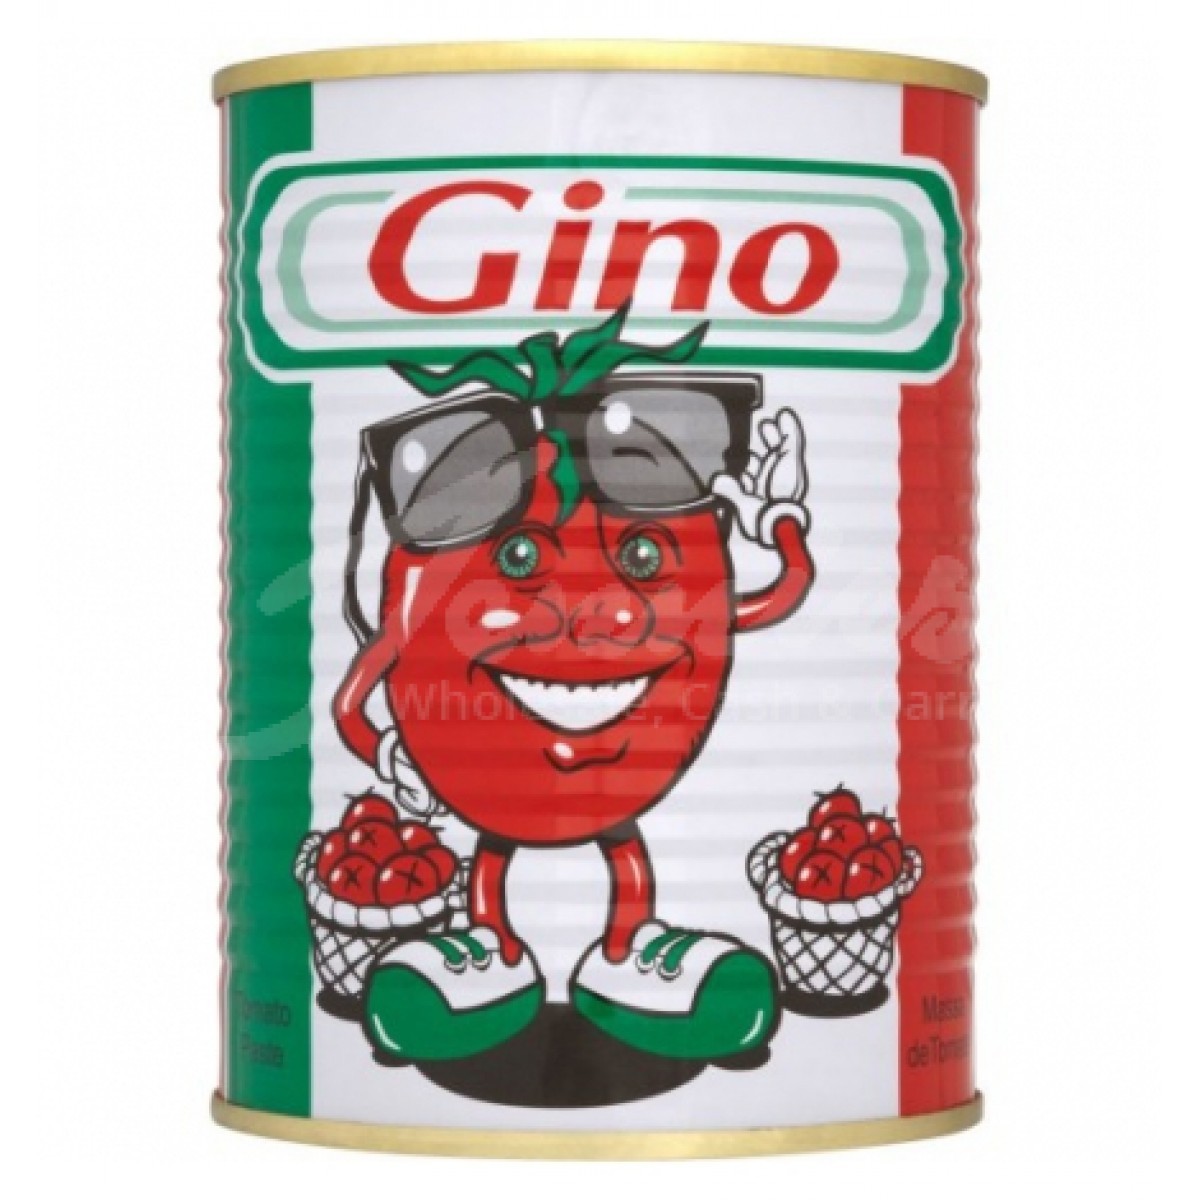 Gino Tomato Puree - Jenniesfoods